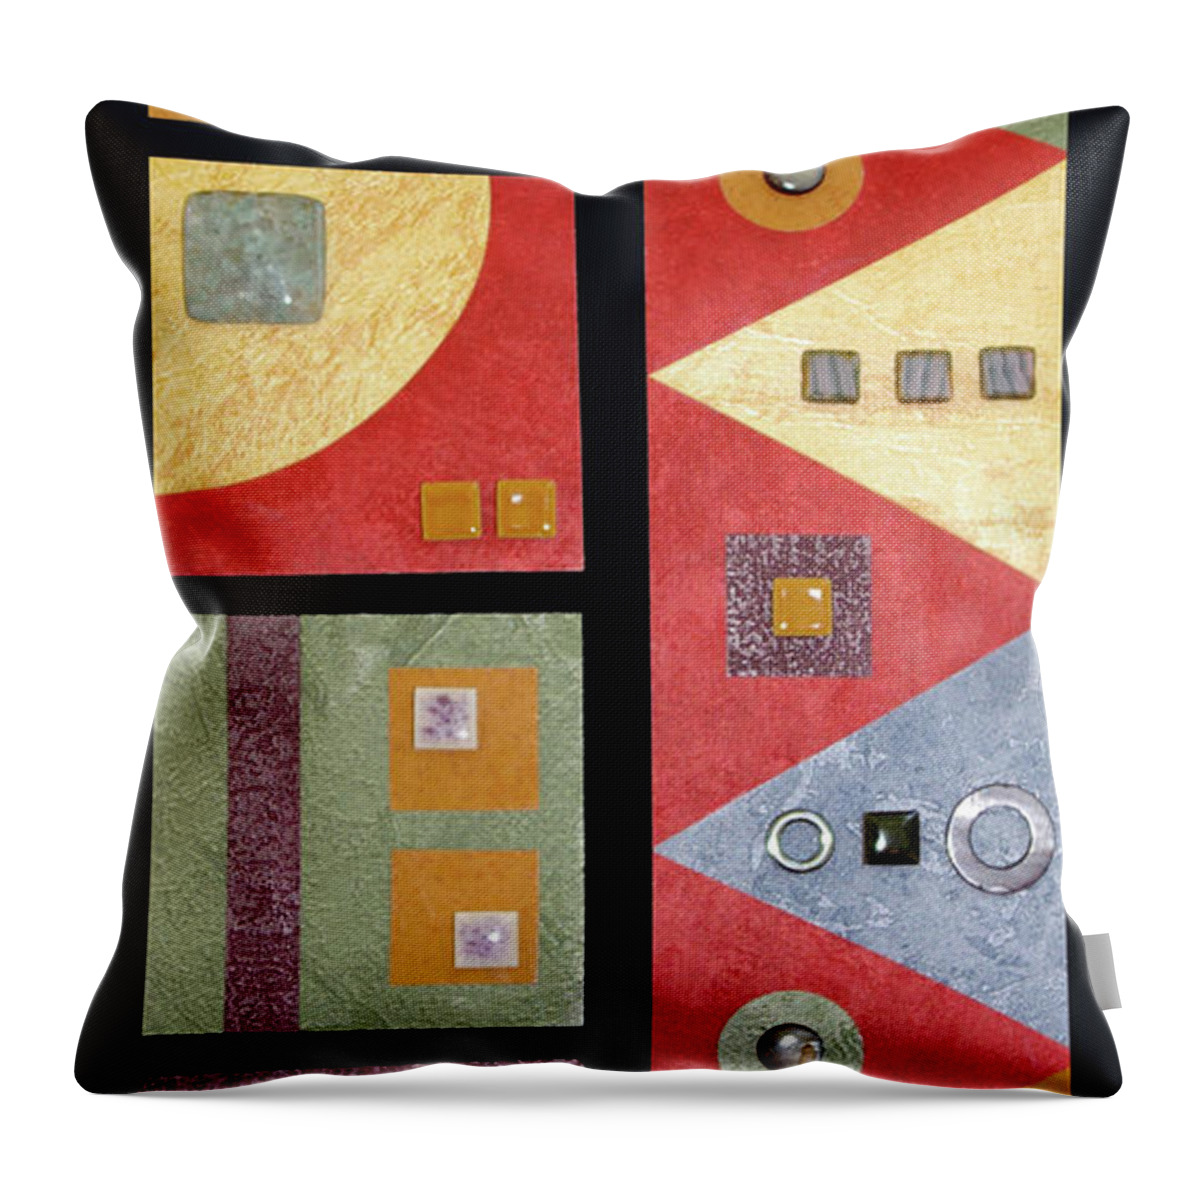 Mixed-media Throw Pillow featuring the mixed media Geometrix by MaryJo Clark